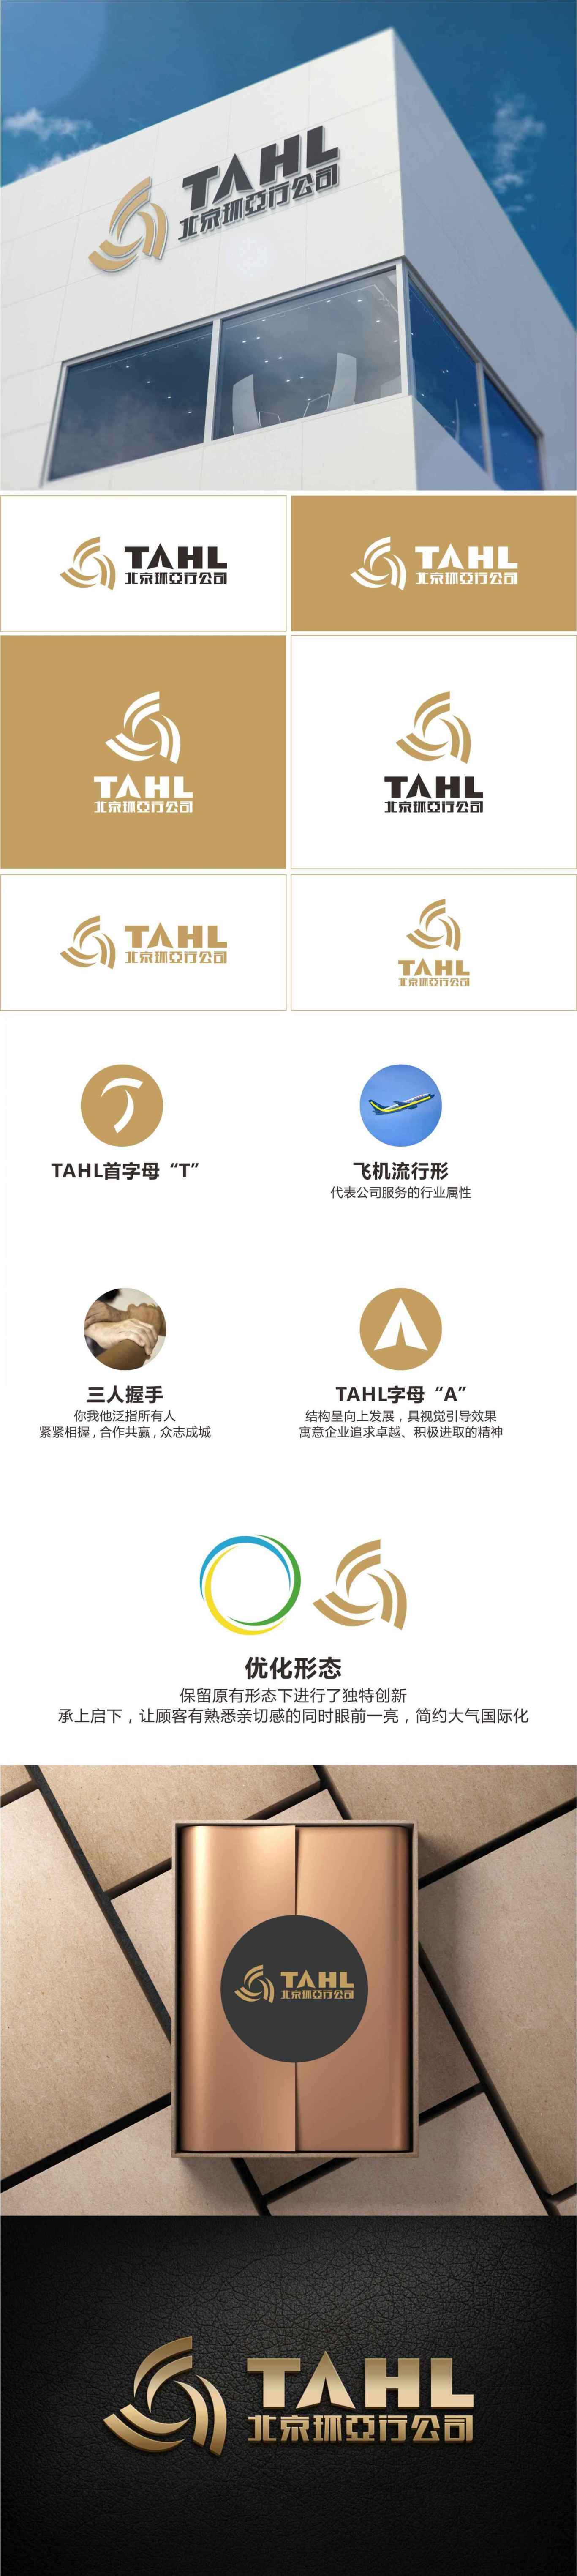 北京環亞行公司logo項目設計圖0